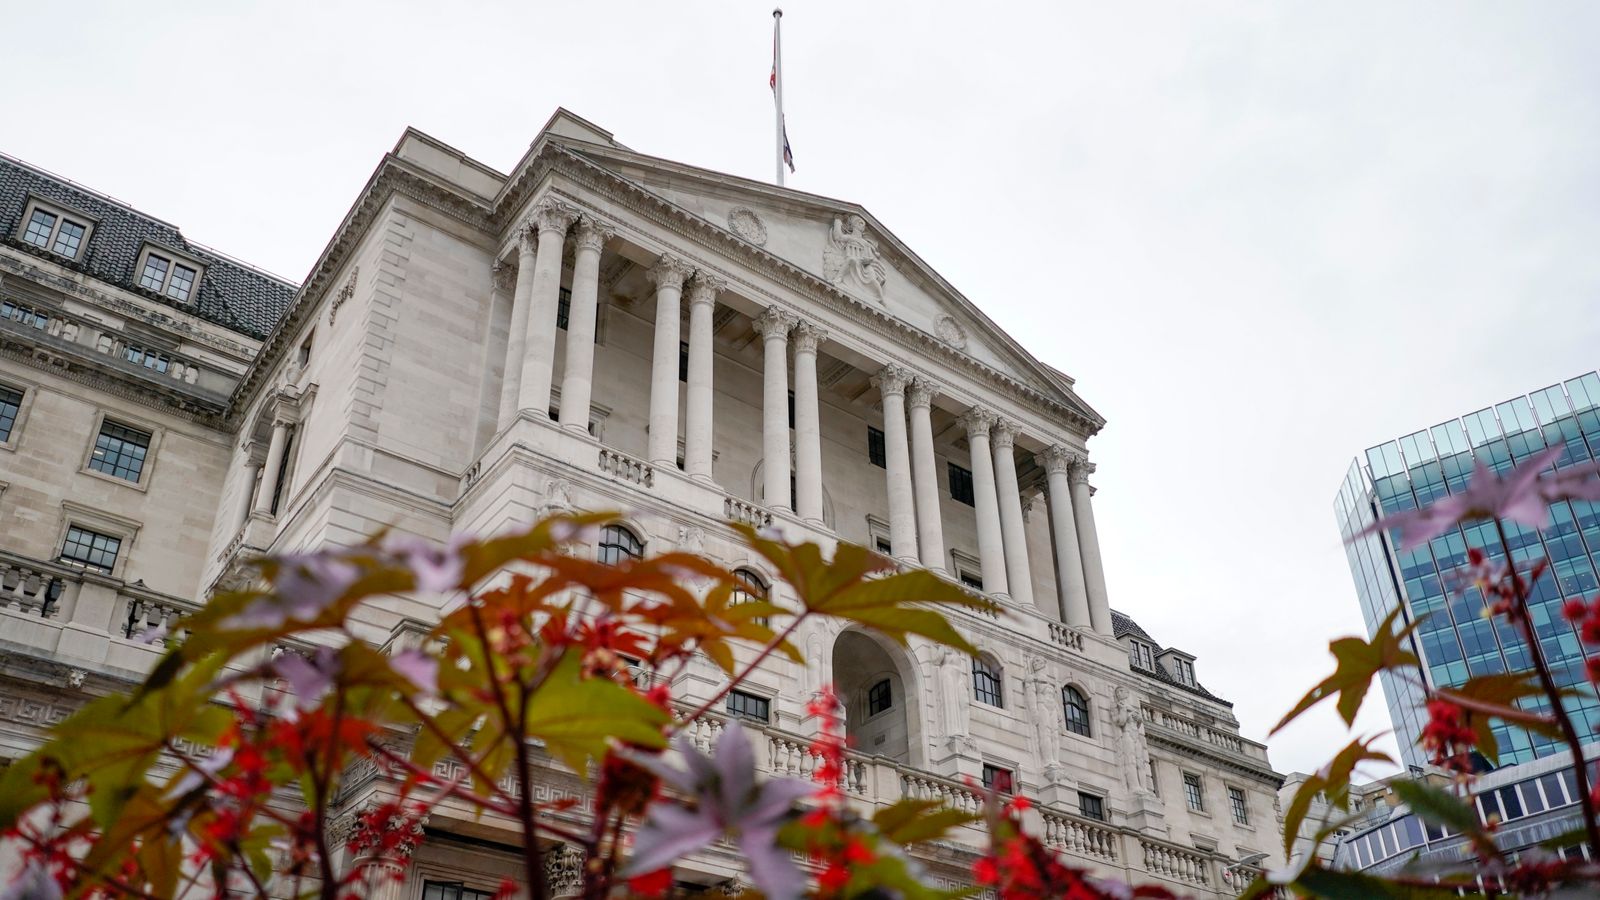 Departemen Keuangan akan memulai pencarian kursi Pengadilan Bank of England yang baru |  Berita bisnis